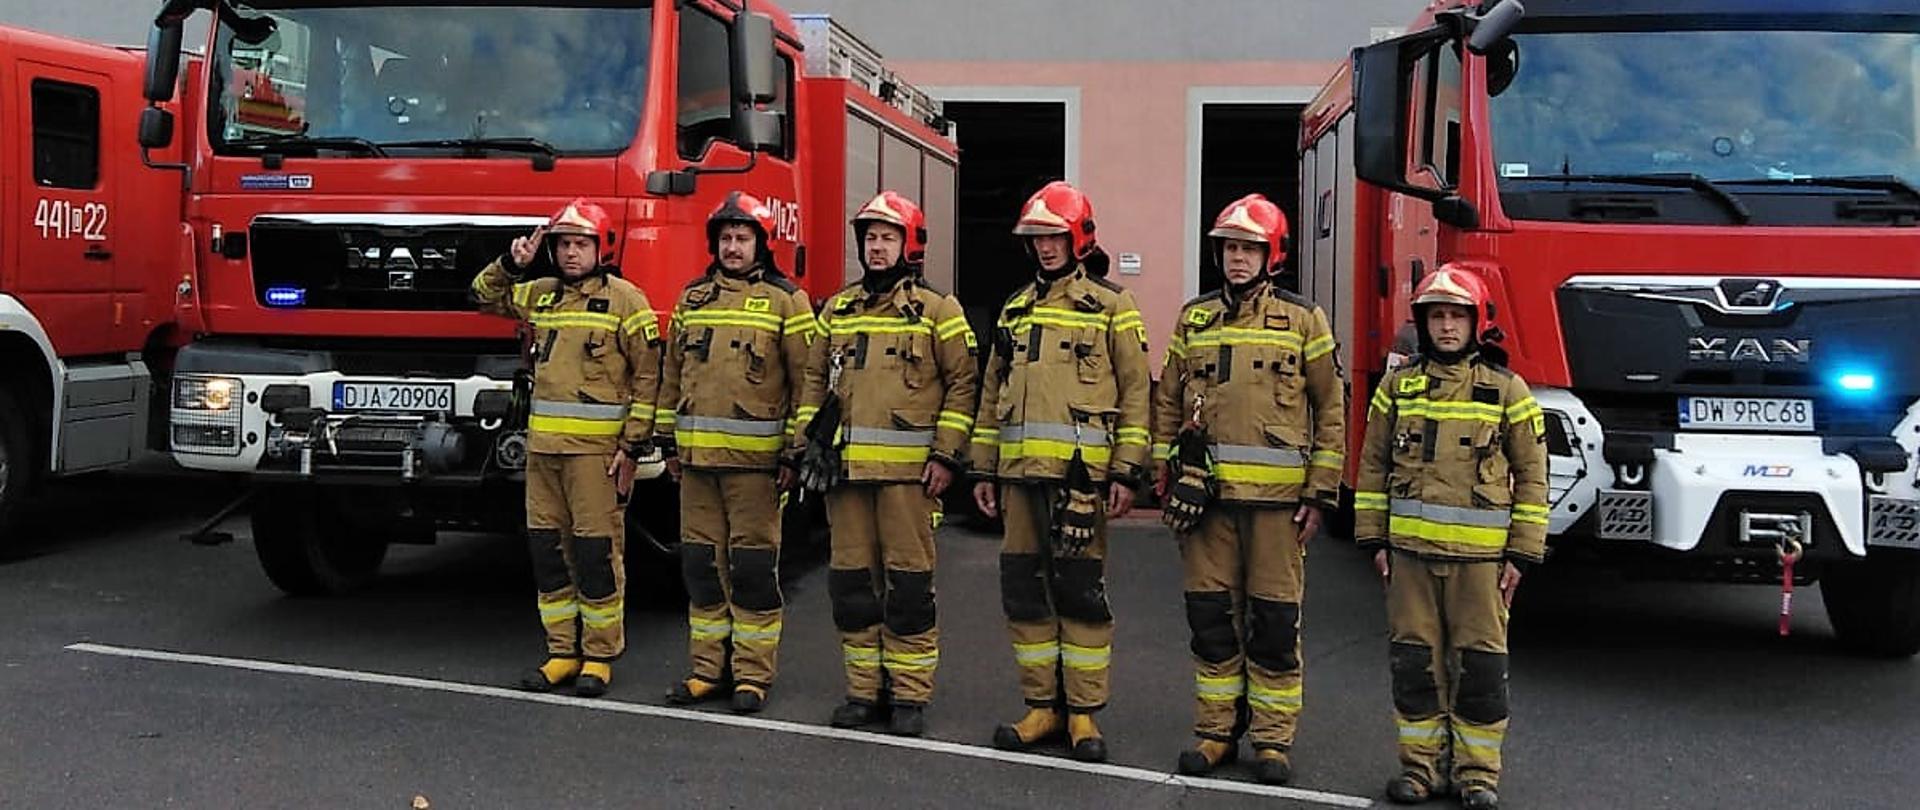 Obraz przedstawia strażaków jaworskiej komendy podczas minuty ciszy dla zmarłego strażaka. Strażacy w umundurowaniu specjalnym. W tle samochody pożarnicze i budynek komendy.